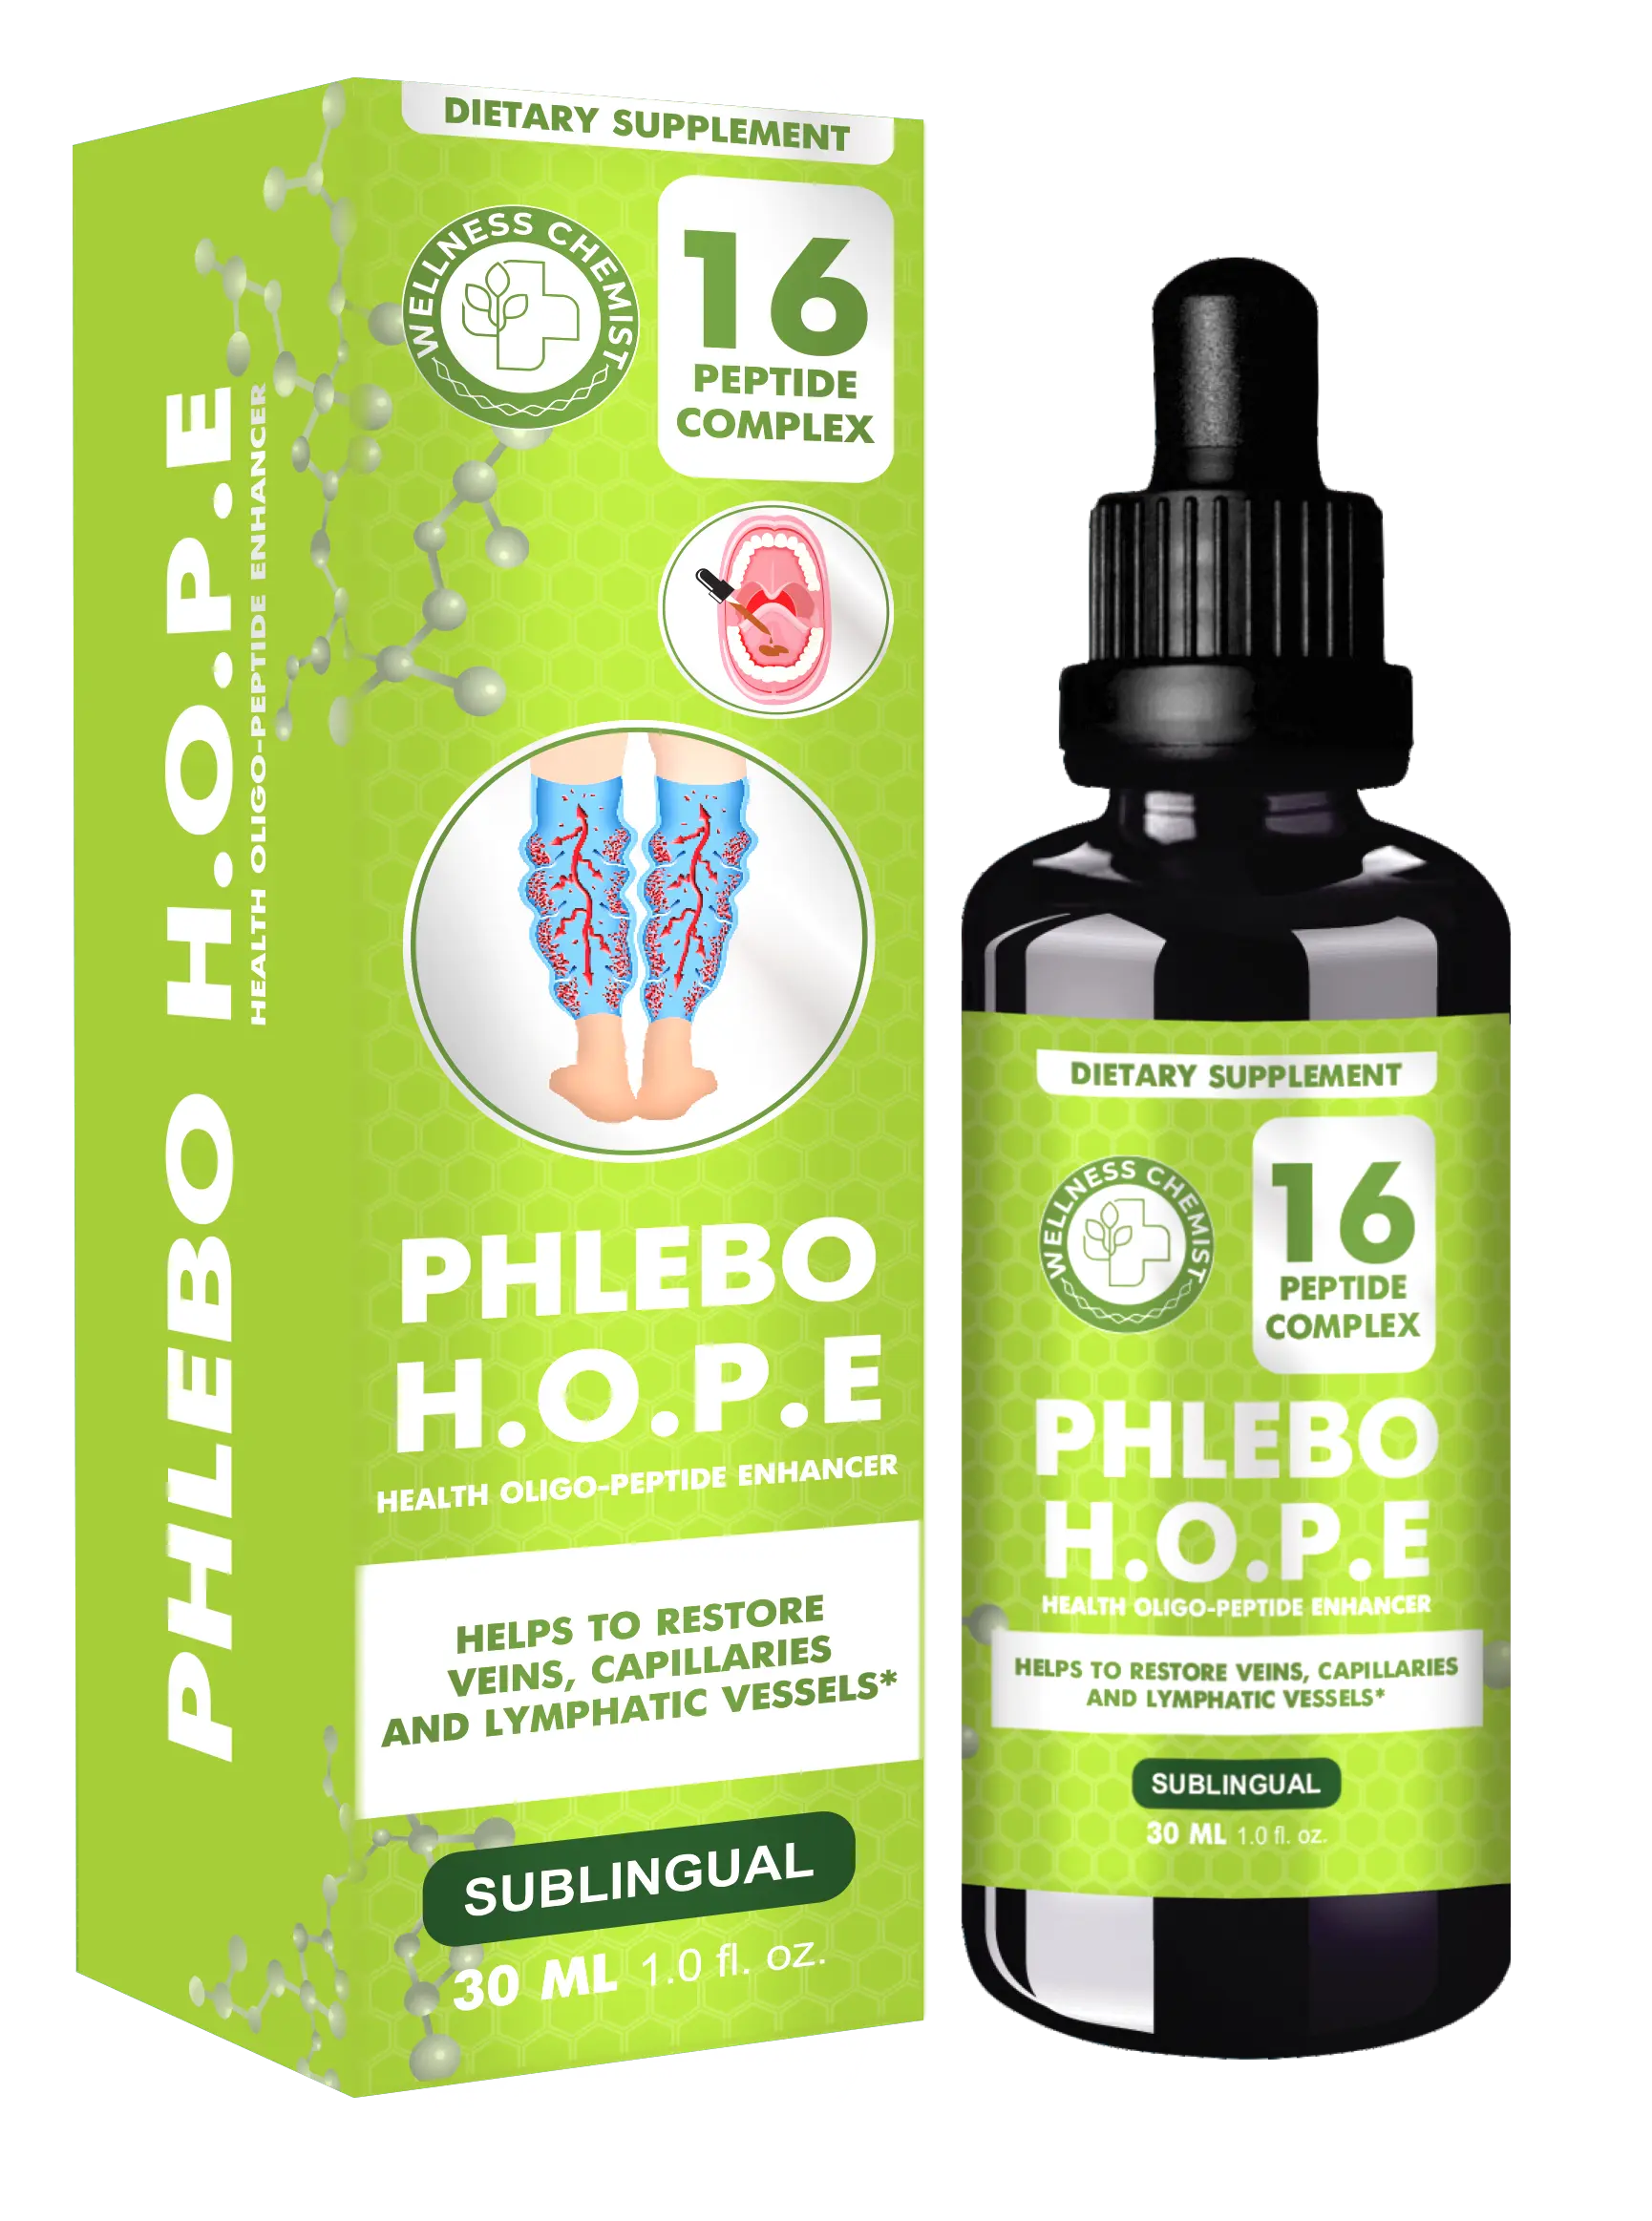 H.O.P.E. Phlebo пептидный комплекс №16 для восстановления венозной системы